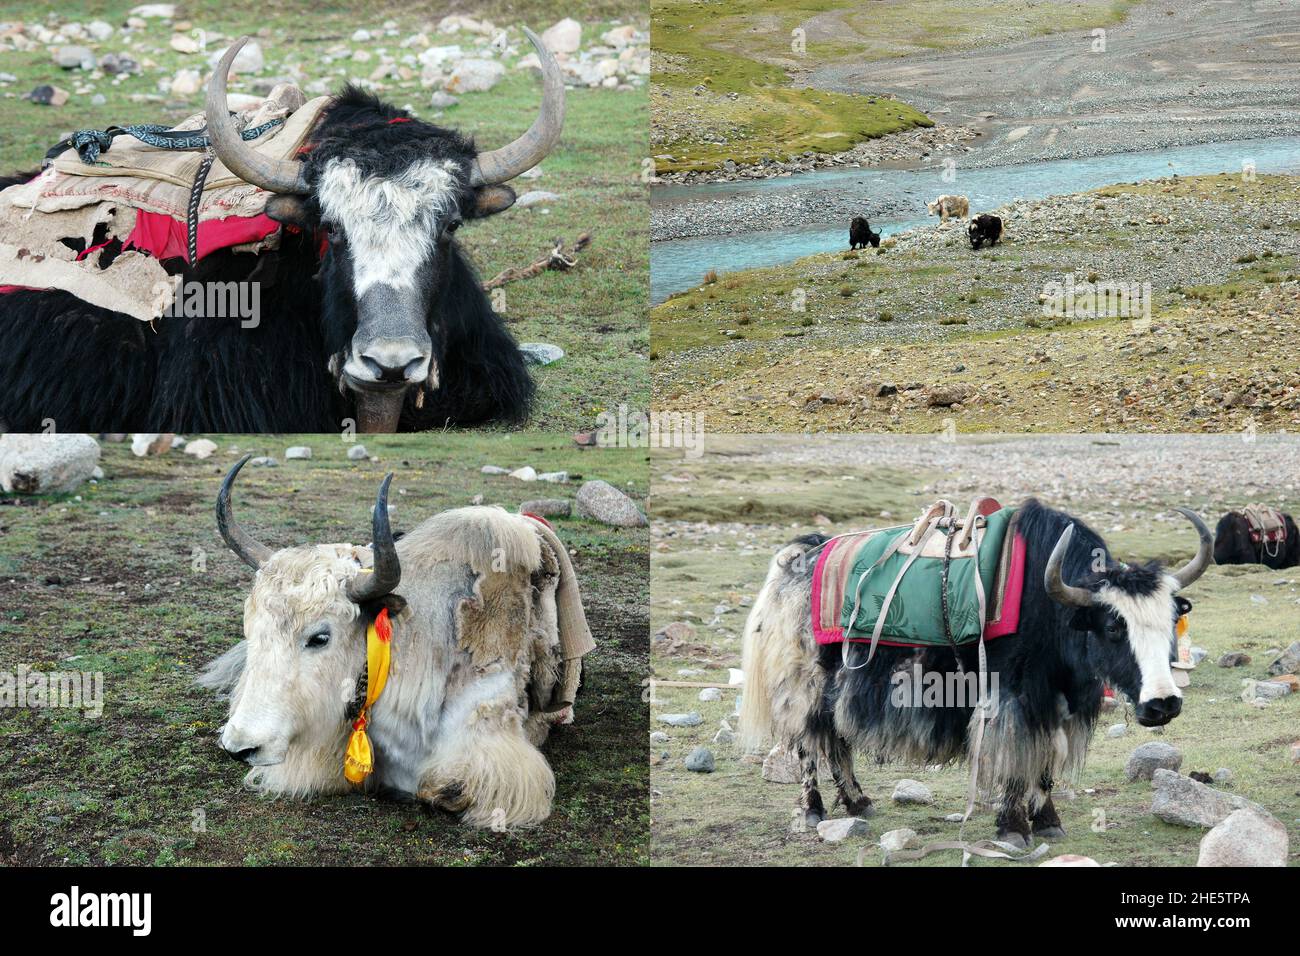 Définir des images de yak Graze dans la vallée près du Mont Kaila, Tibet, Chine.Himalaya concept de voyage Banque D'Images